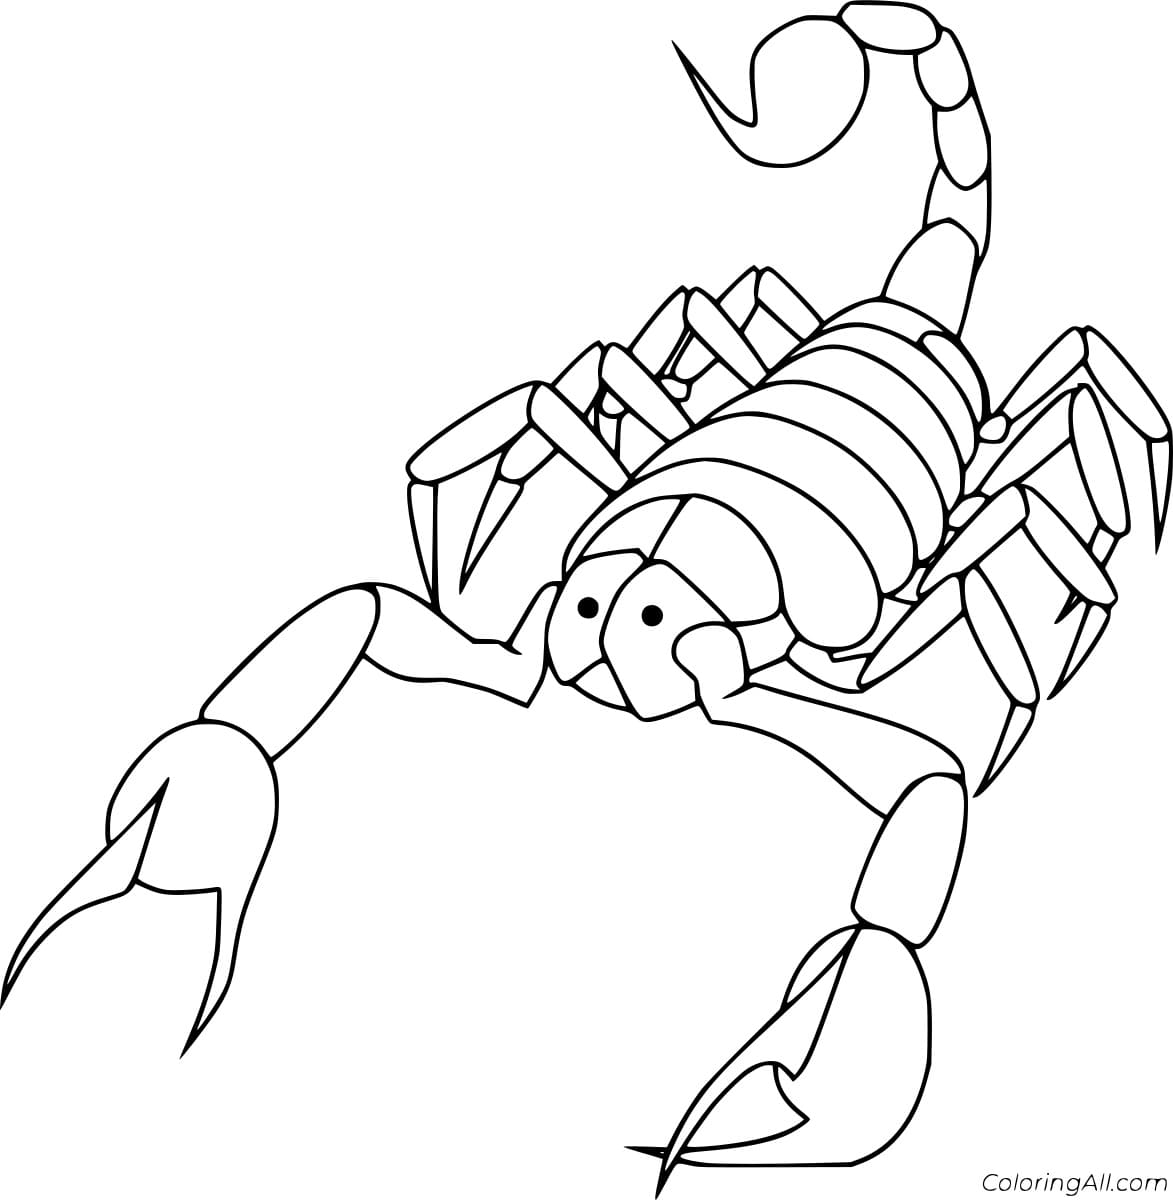 Scorpion Walking Image